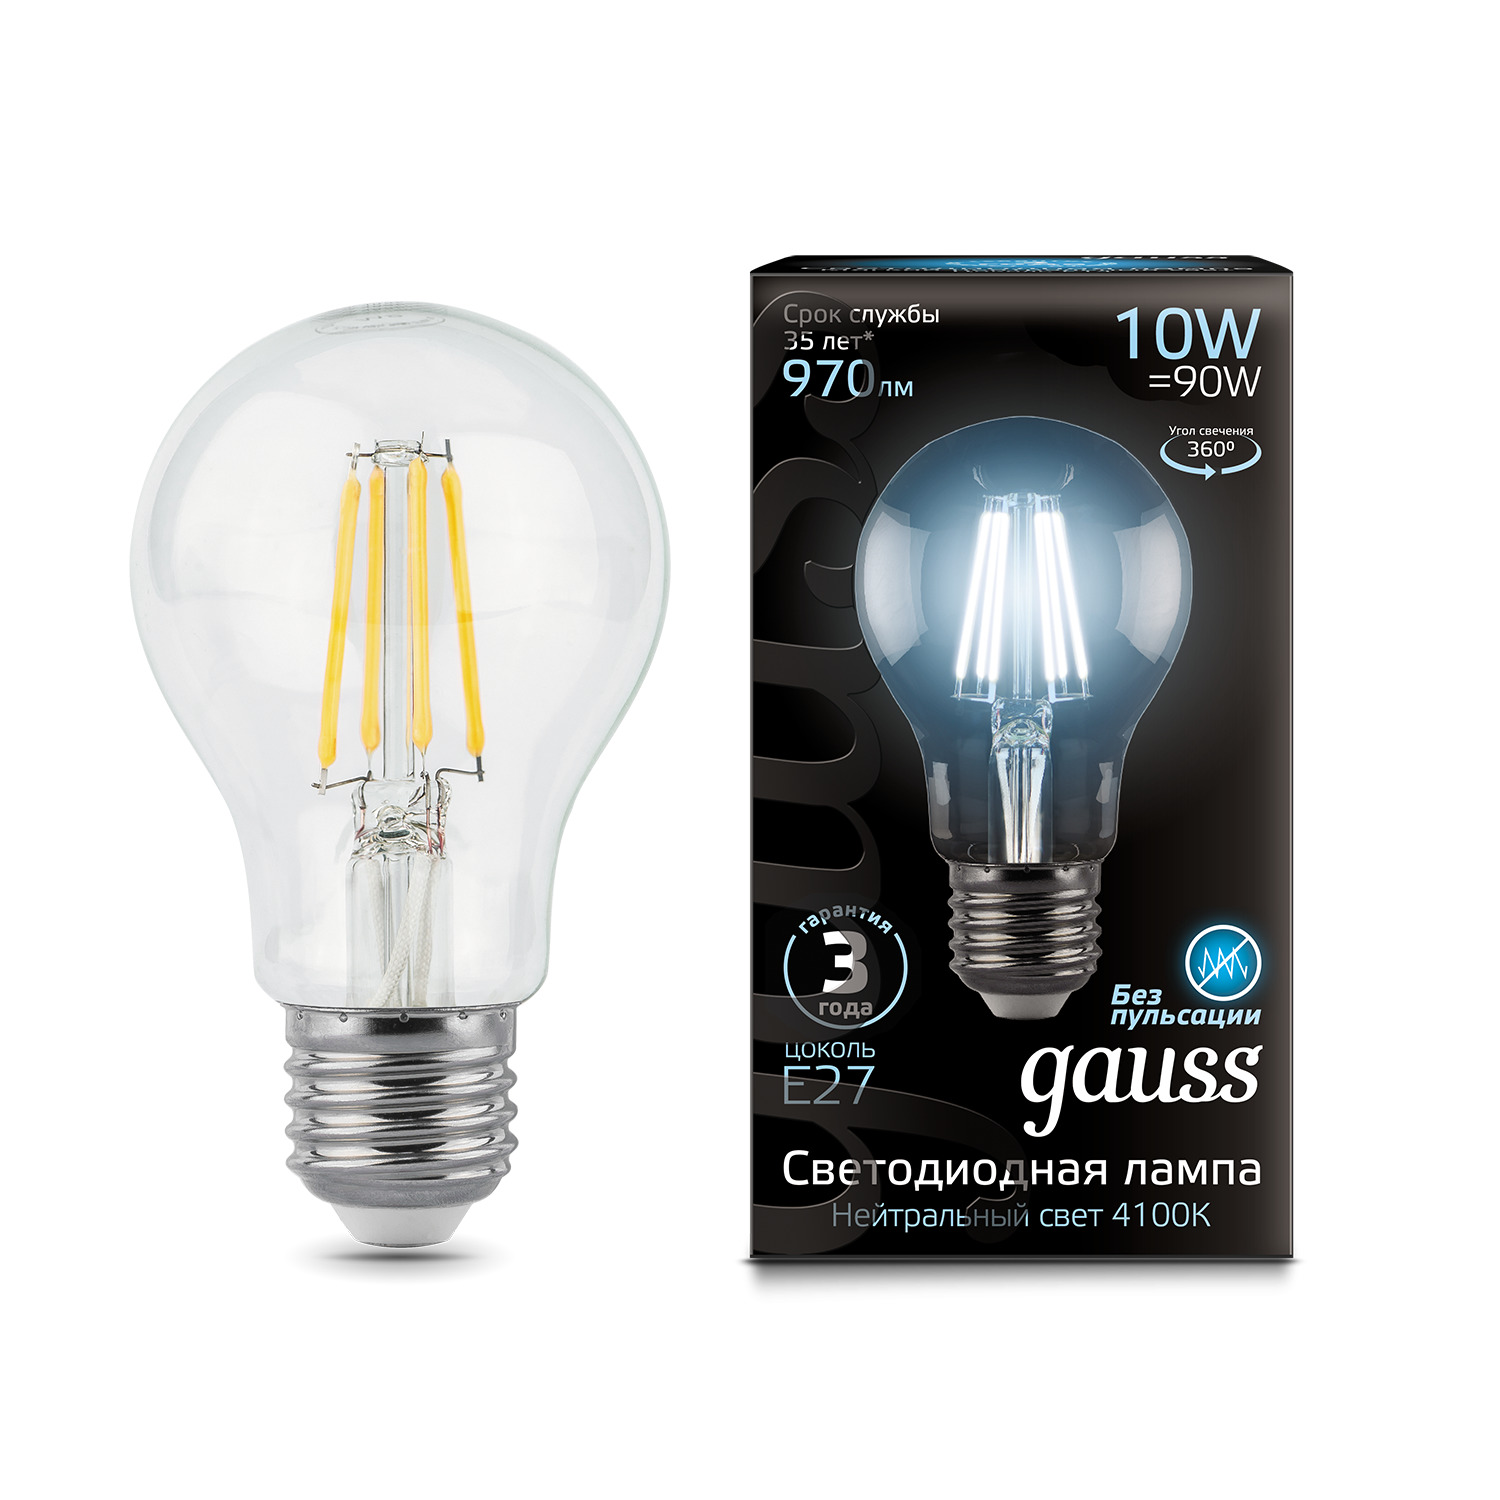 Лампа Gauss LED Filament A60 E27 10W 970lm 4100К 1/10/40 gauss led filament a60 e27 6w 4100к 1 10 51